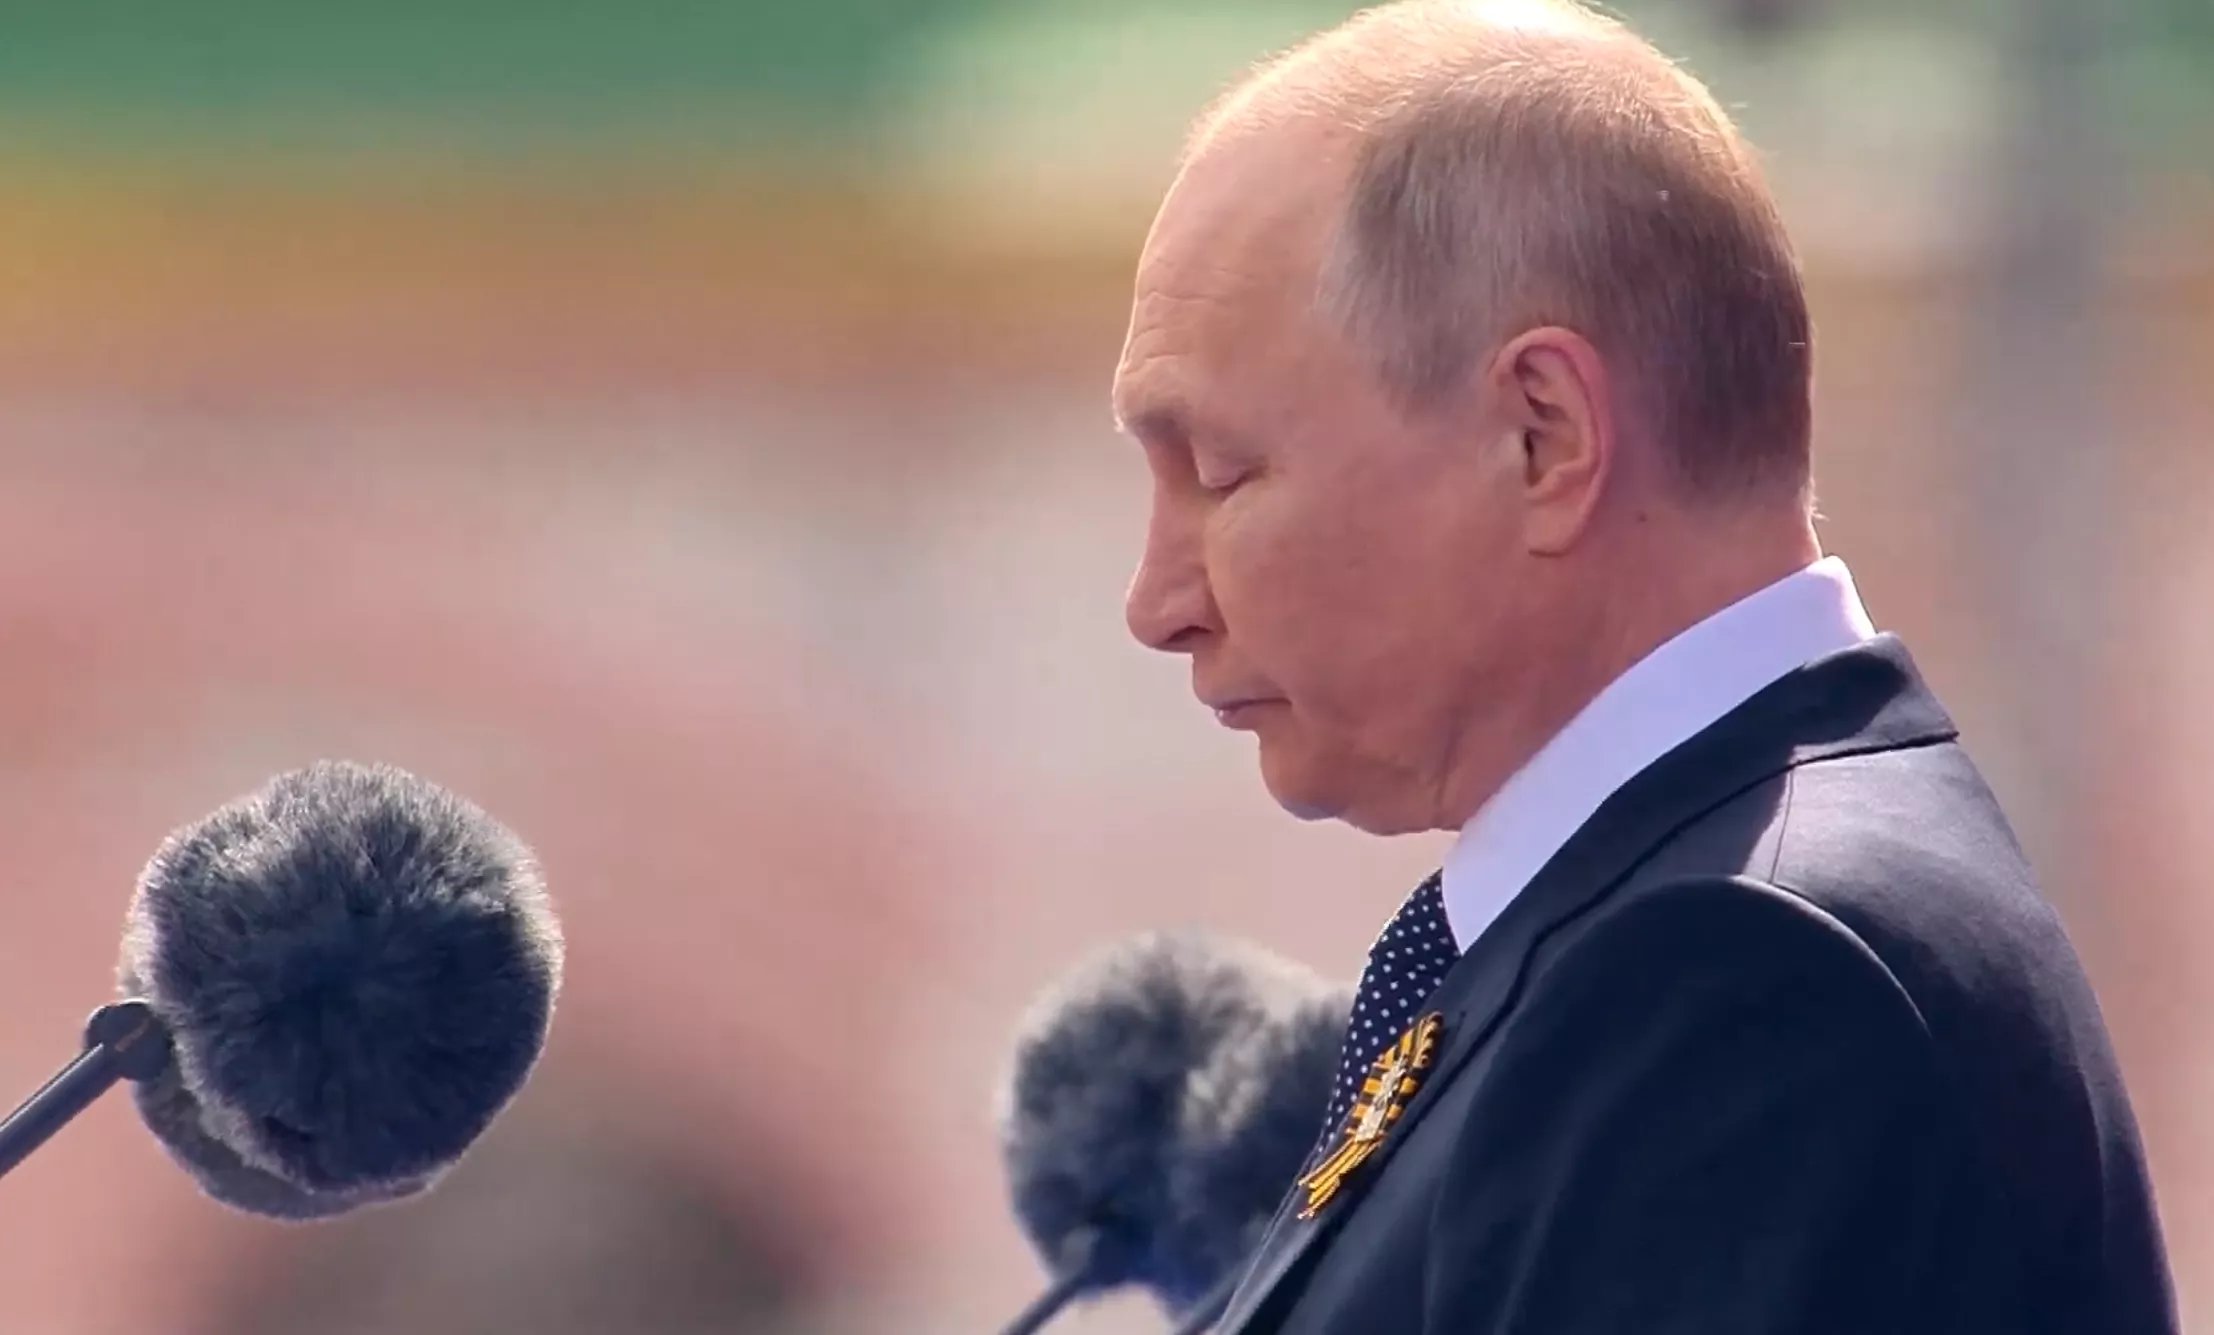 Выступая с речью, Путин вдруг замолчал секунд на 10. Казалось, его тошнит